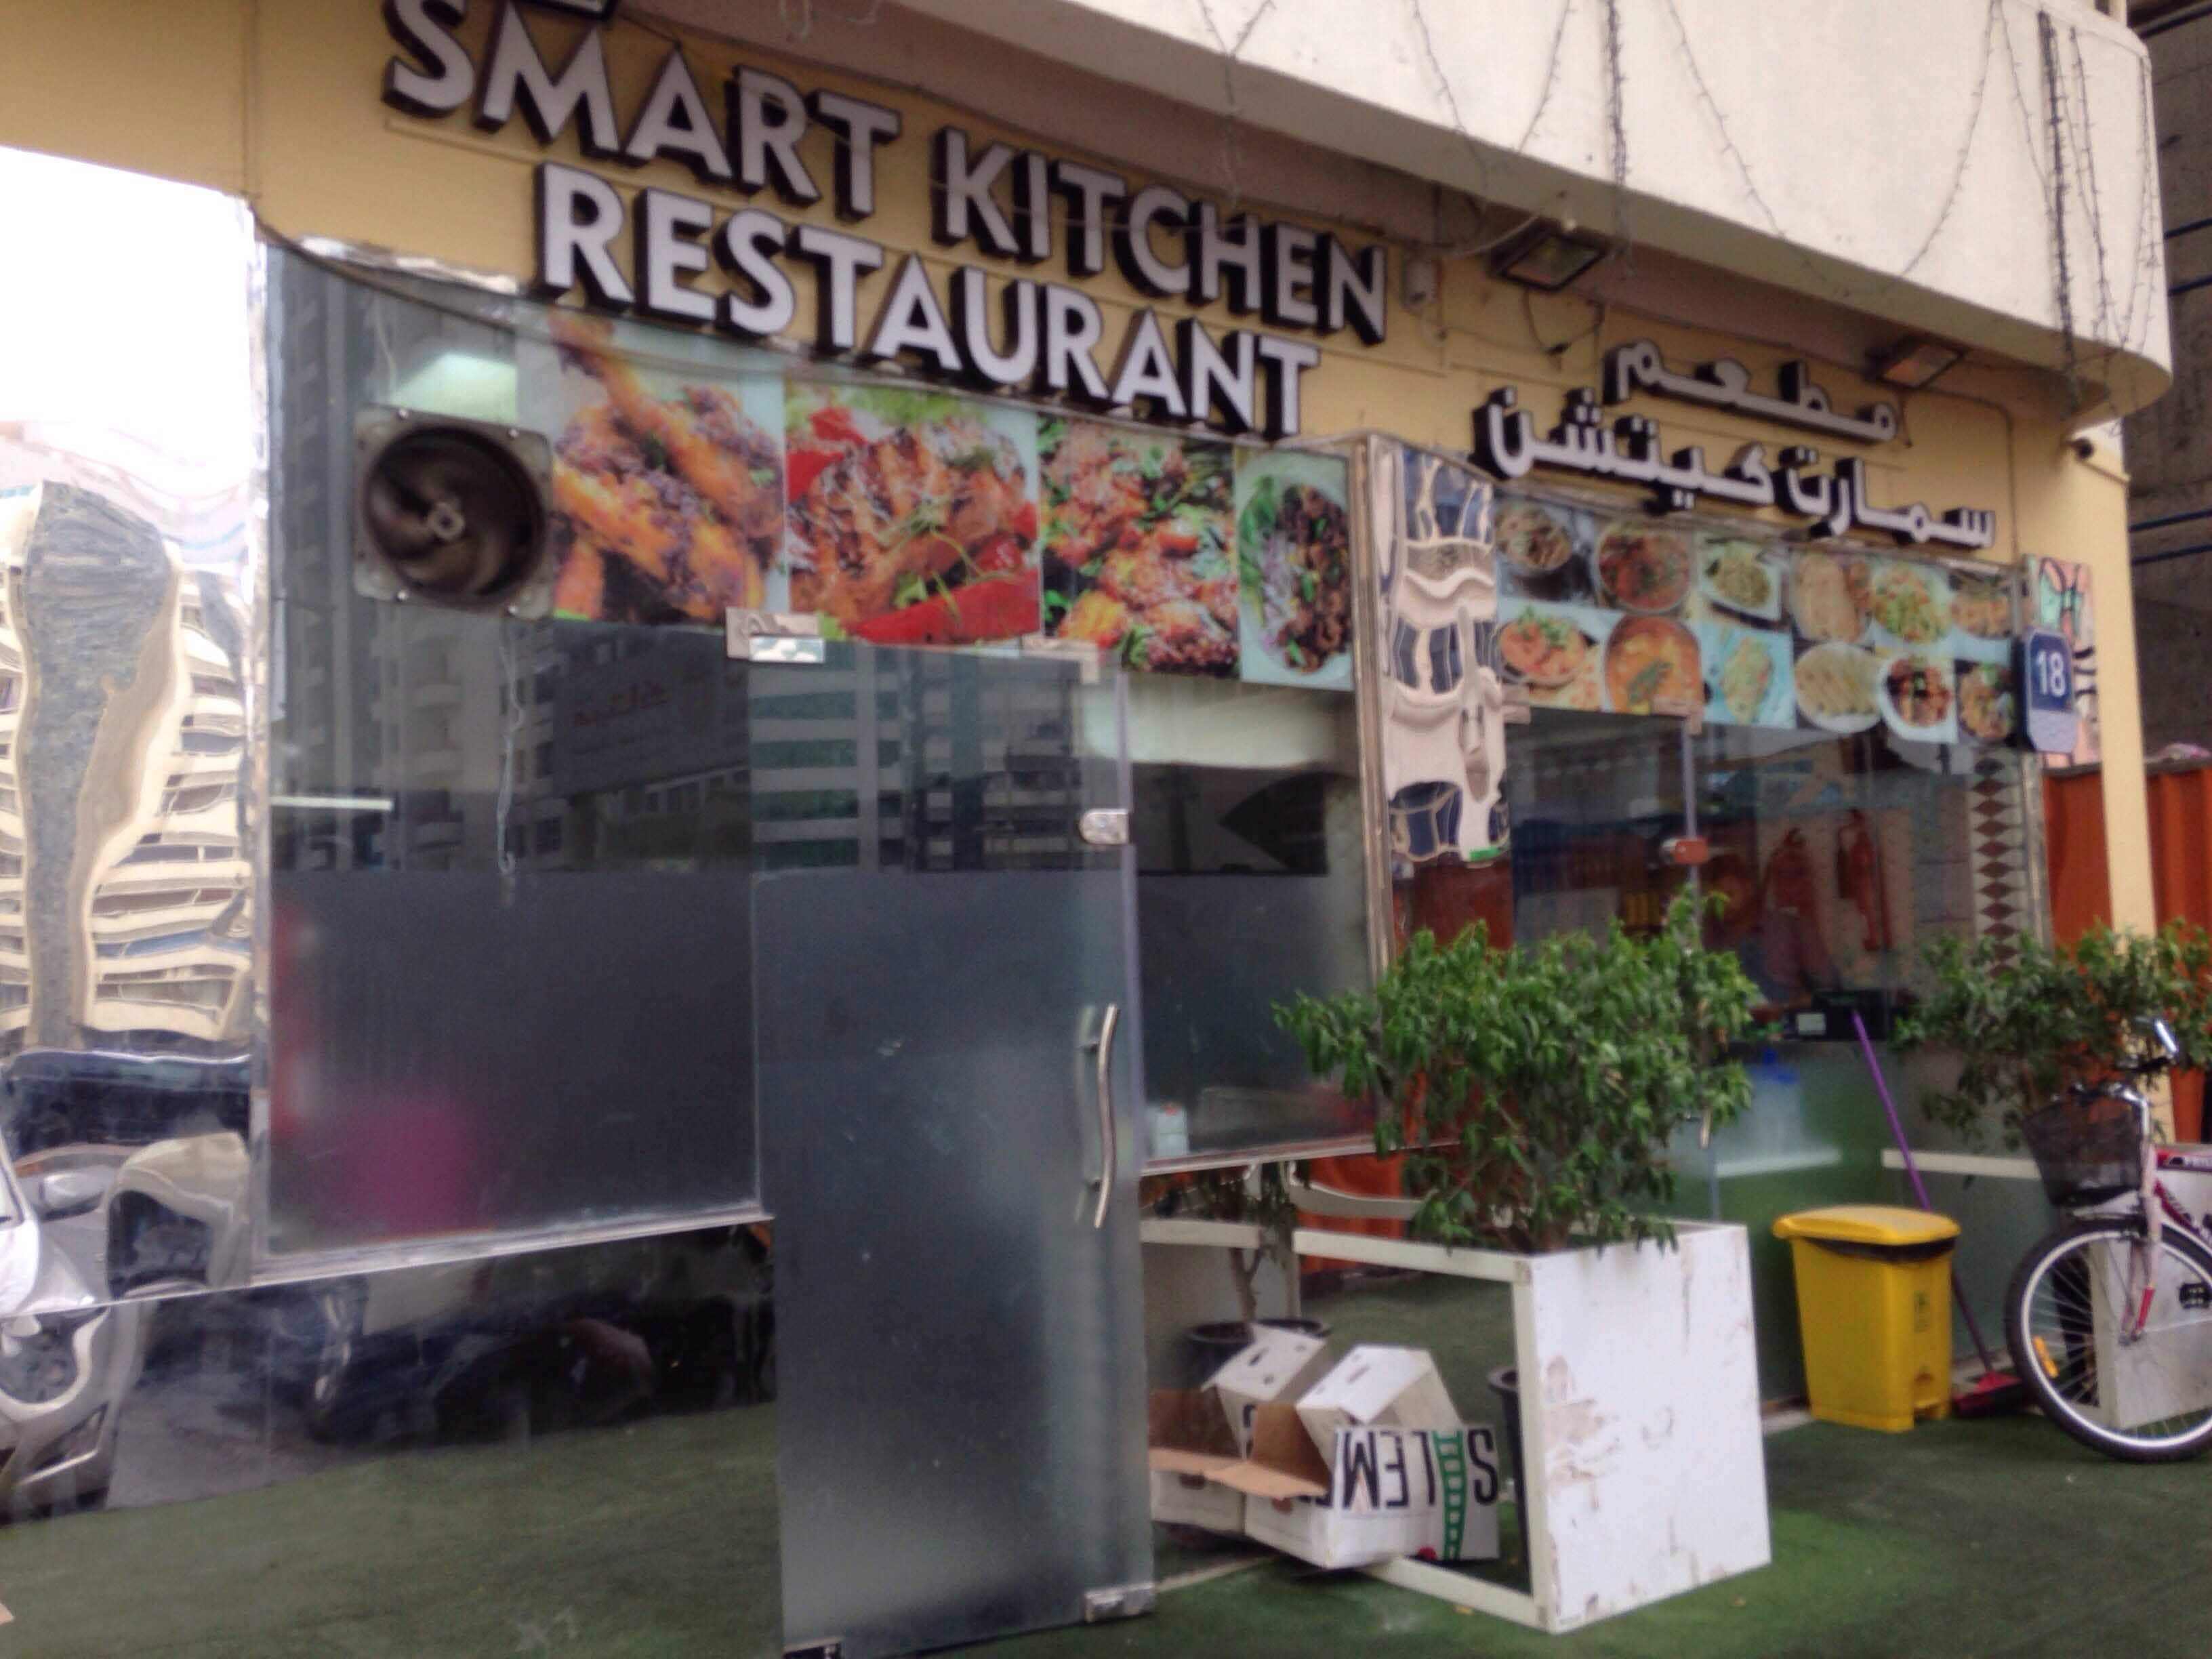 smart kitchen restaurant tourist club area